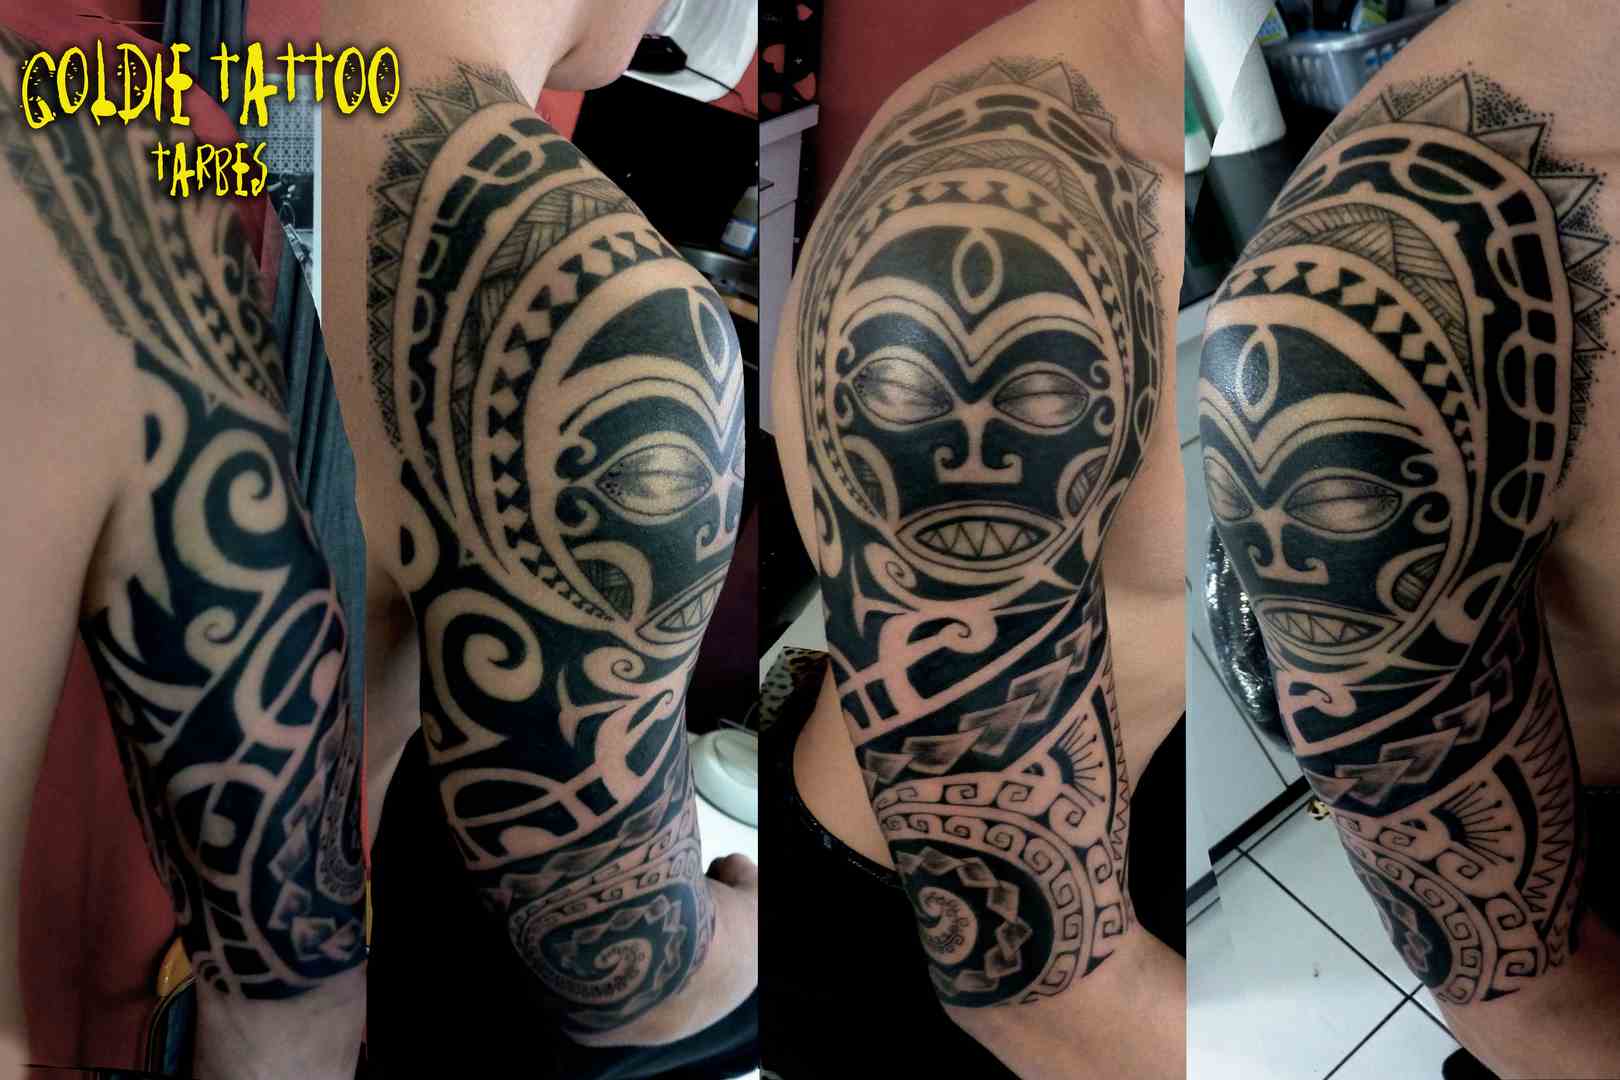 goldie-tattoo-tarbes-oct_-2013-bras-maori-couronne-hdtv-1080site.jpg